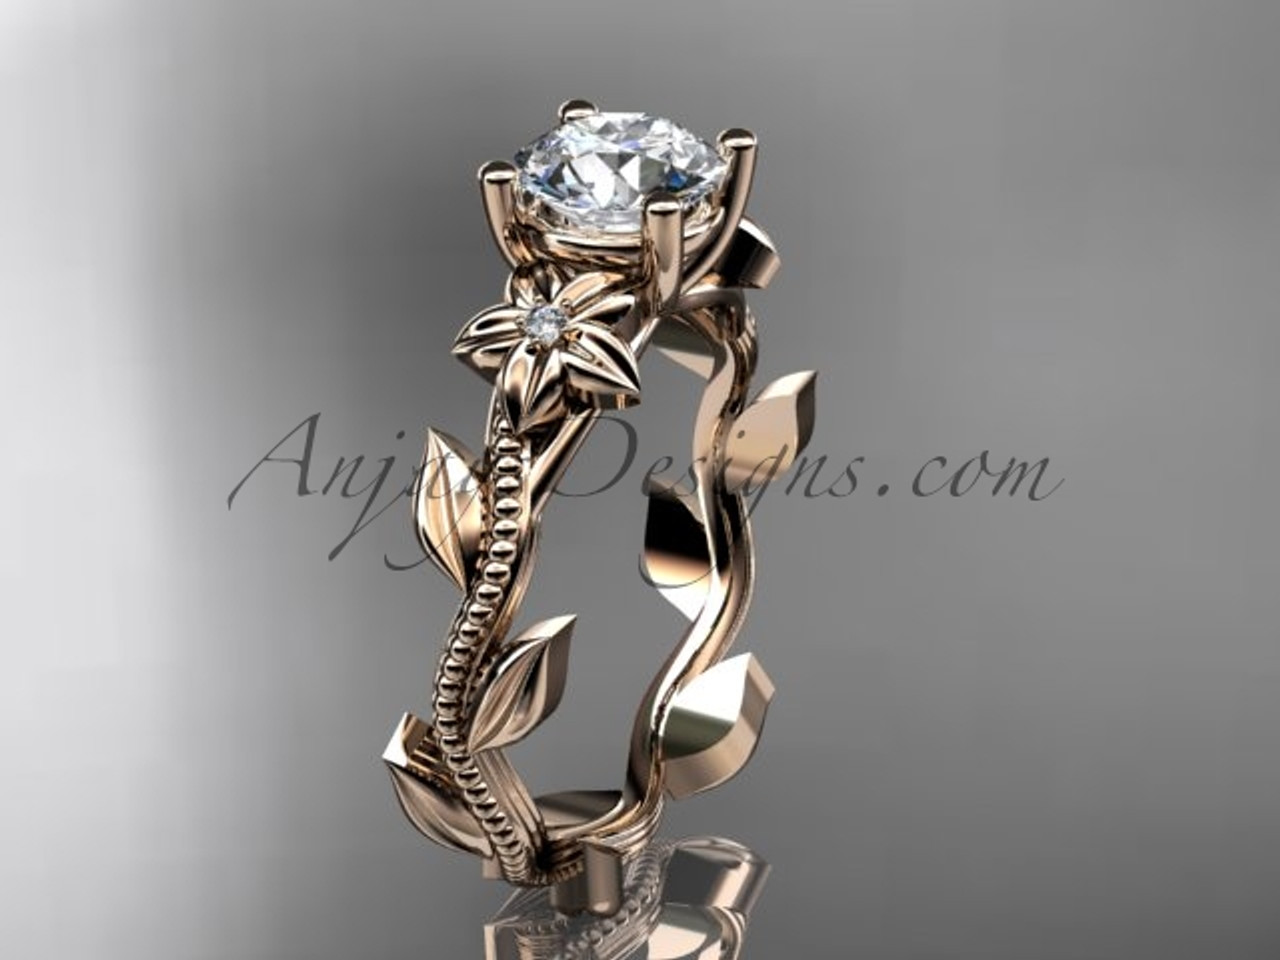 Unique Rose Gold Vine & Diamond Ring